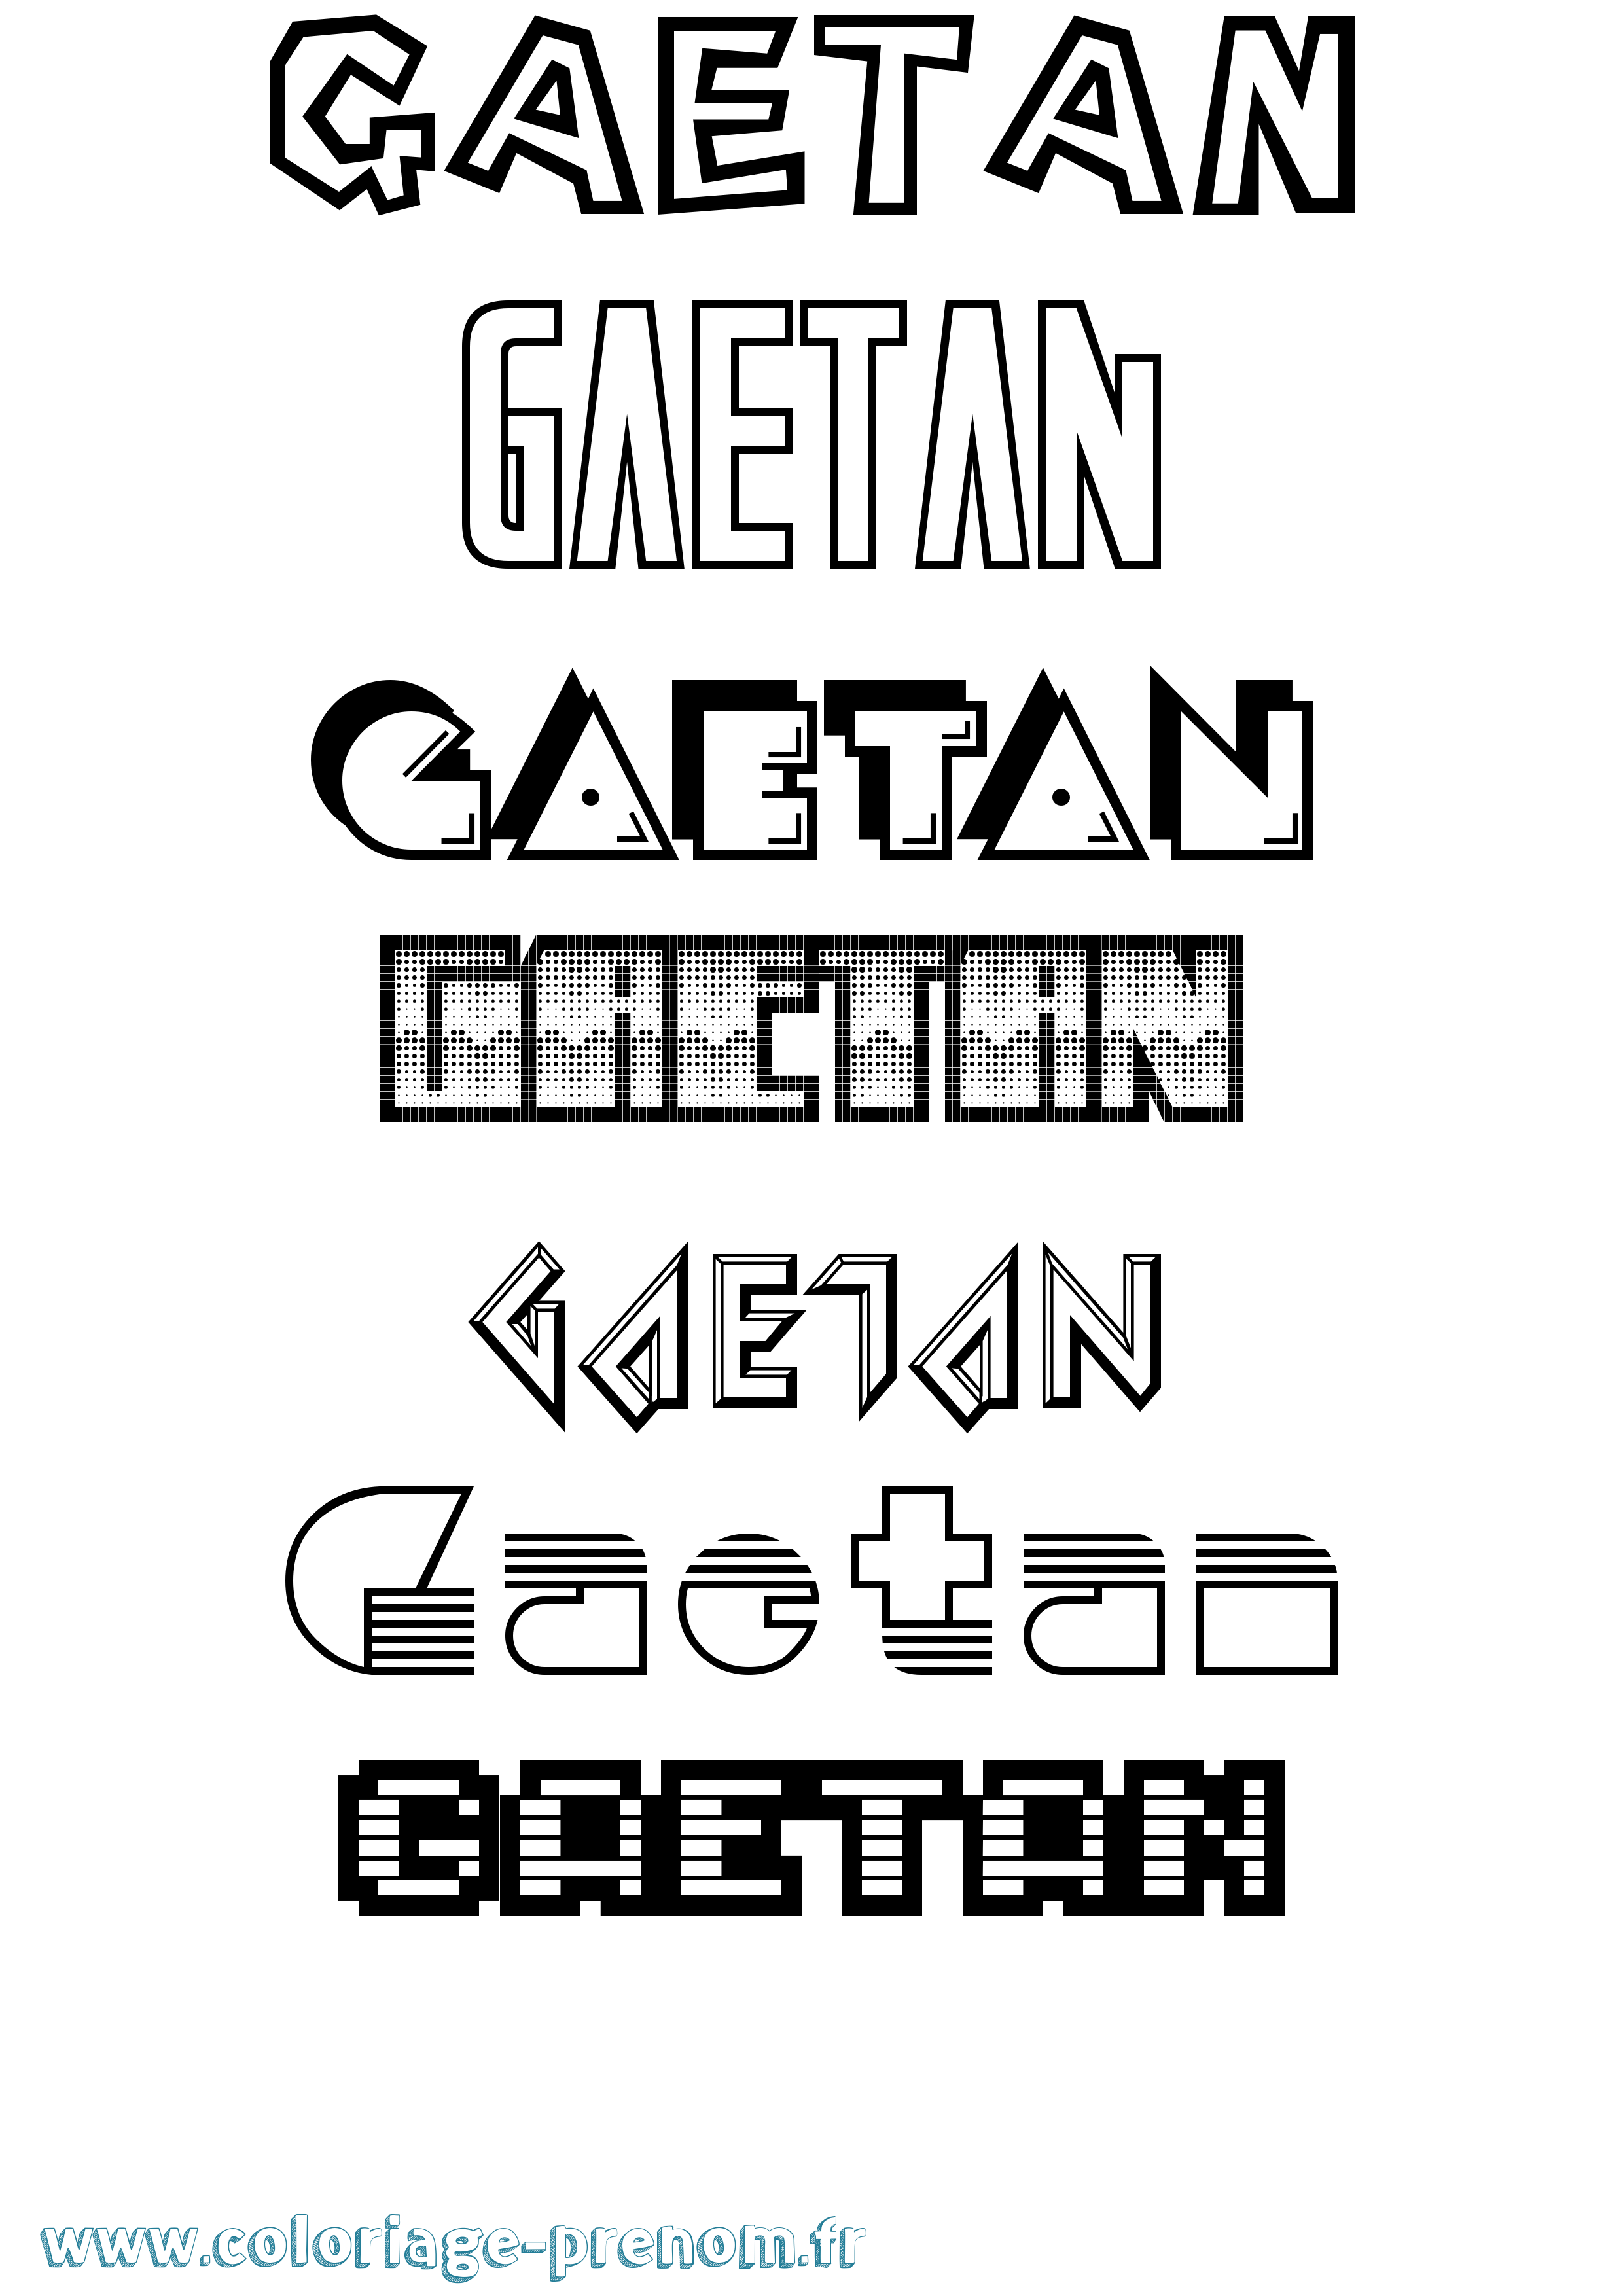 Coloriage prénom Gaetan